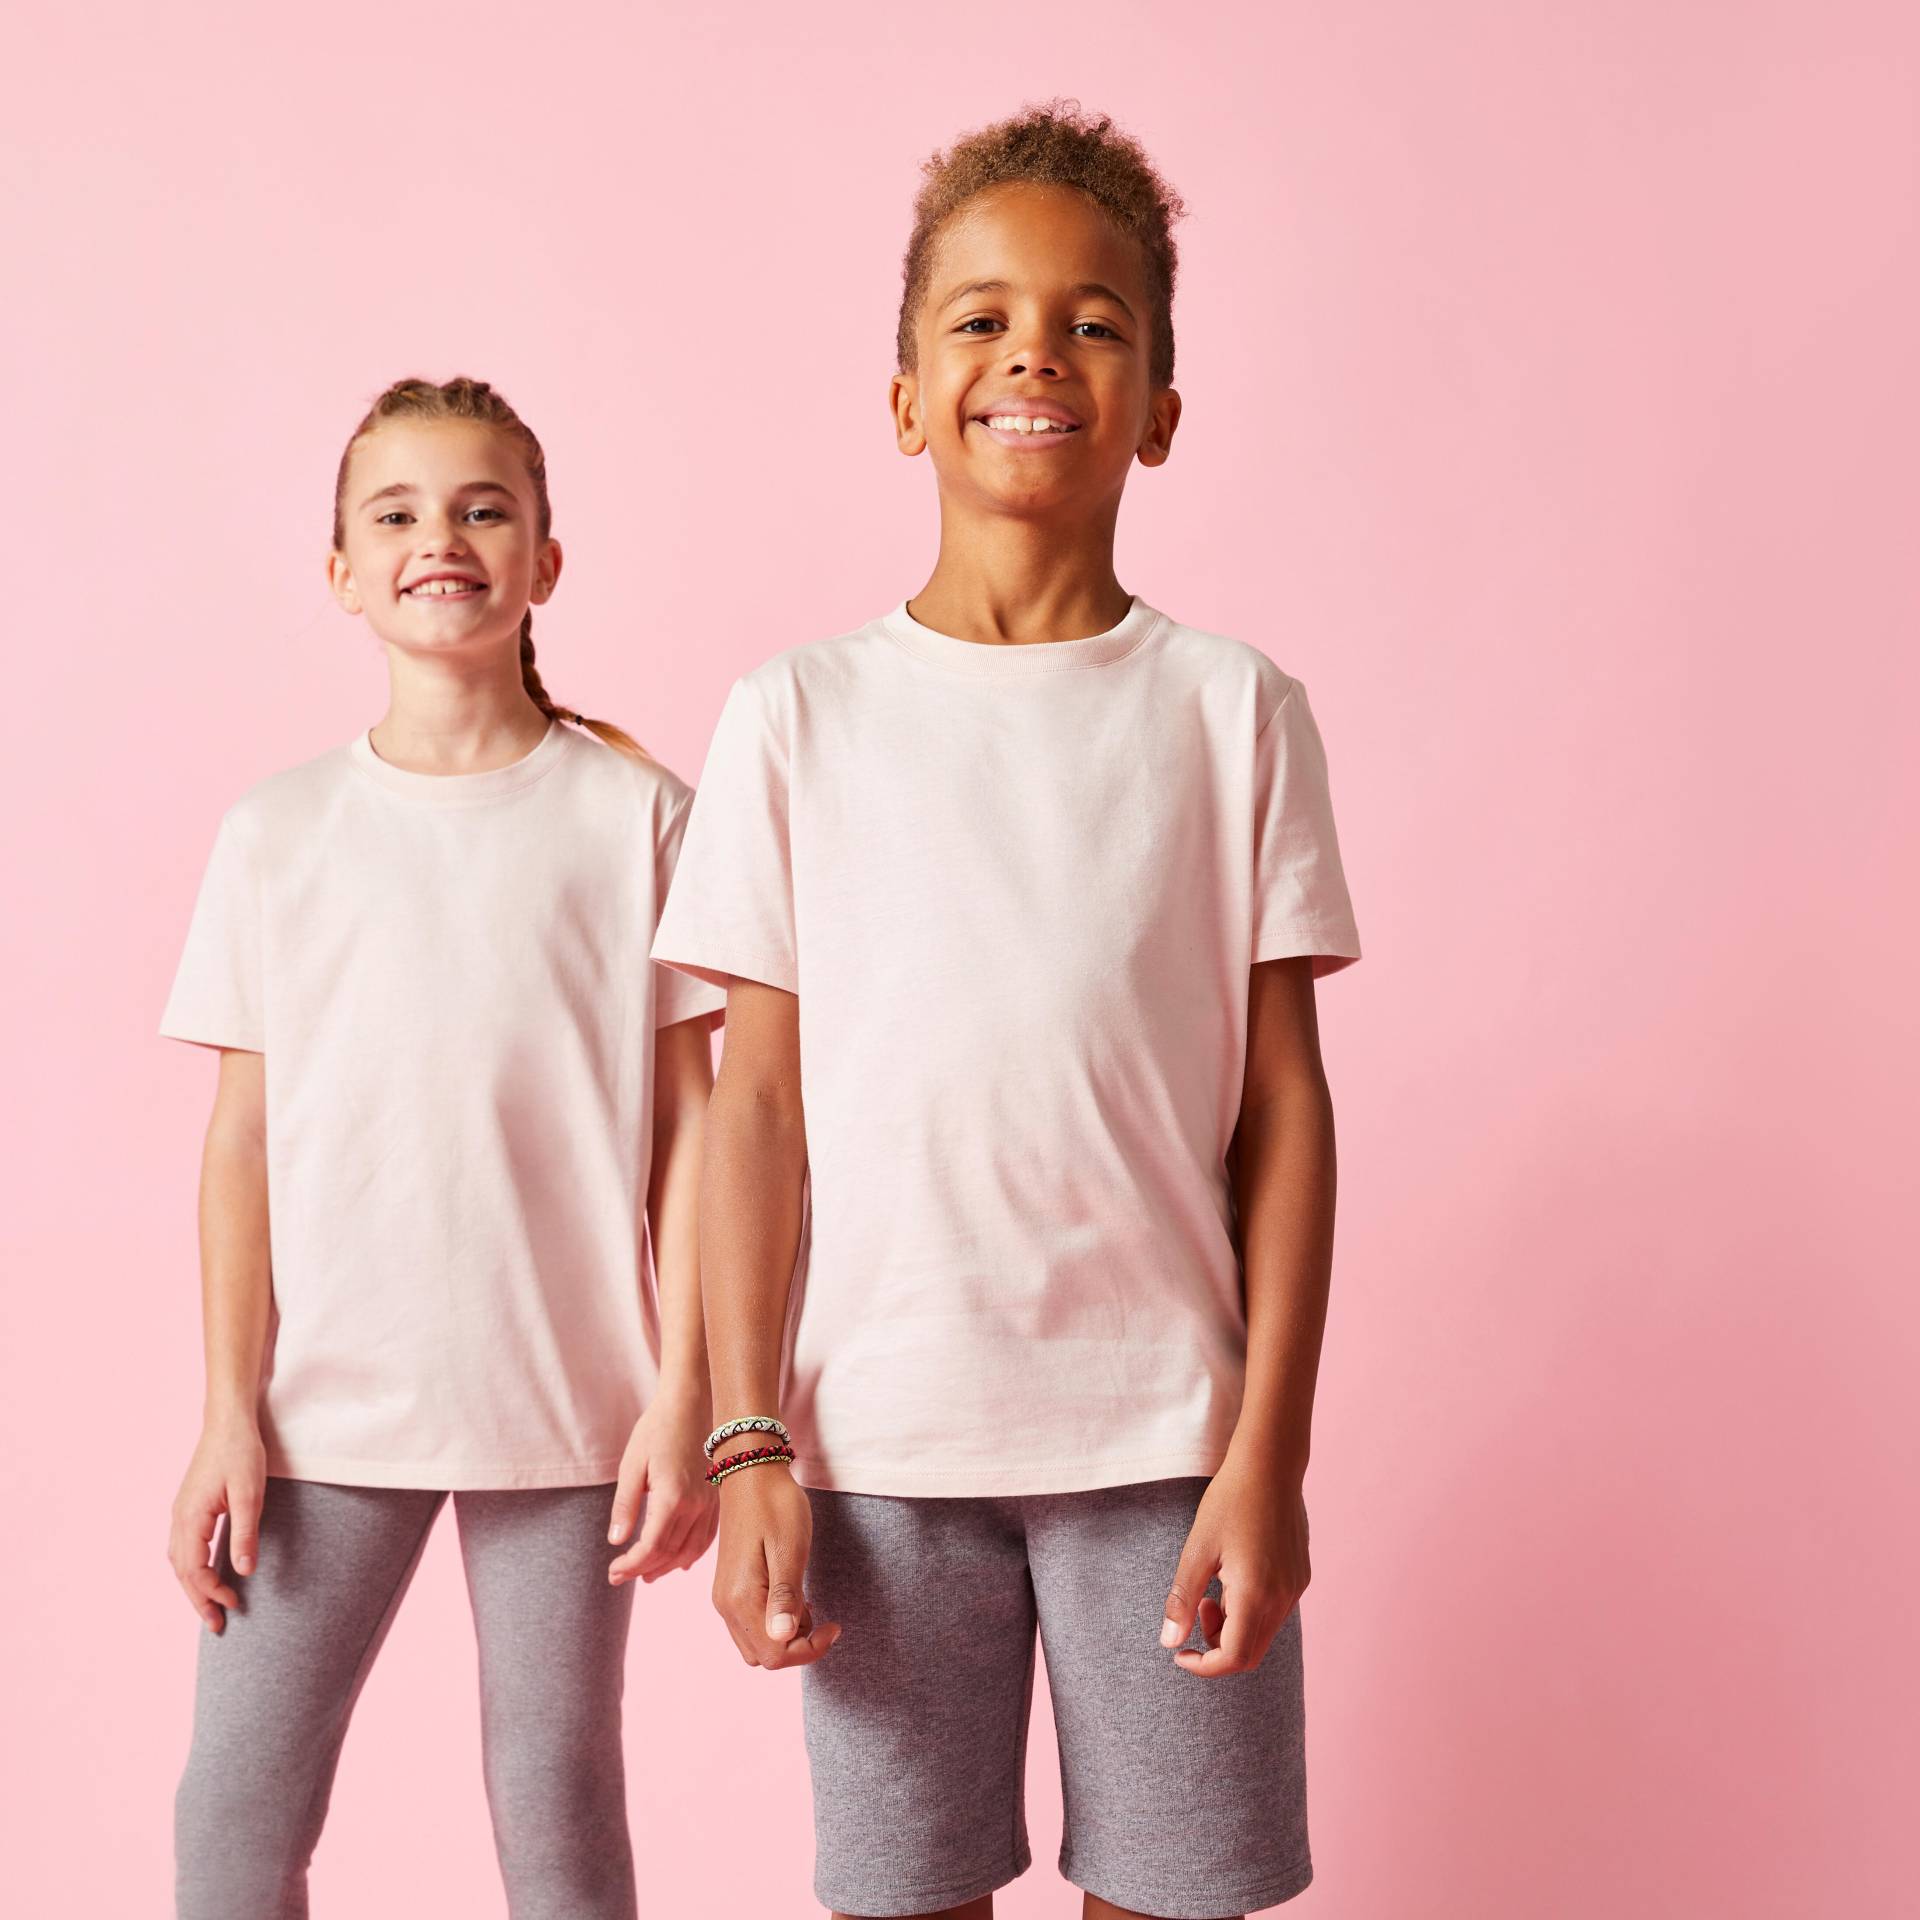 T-Shirt Kinder Baumwolle Ecodesign - einfarbig von Domyos